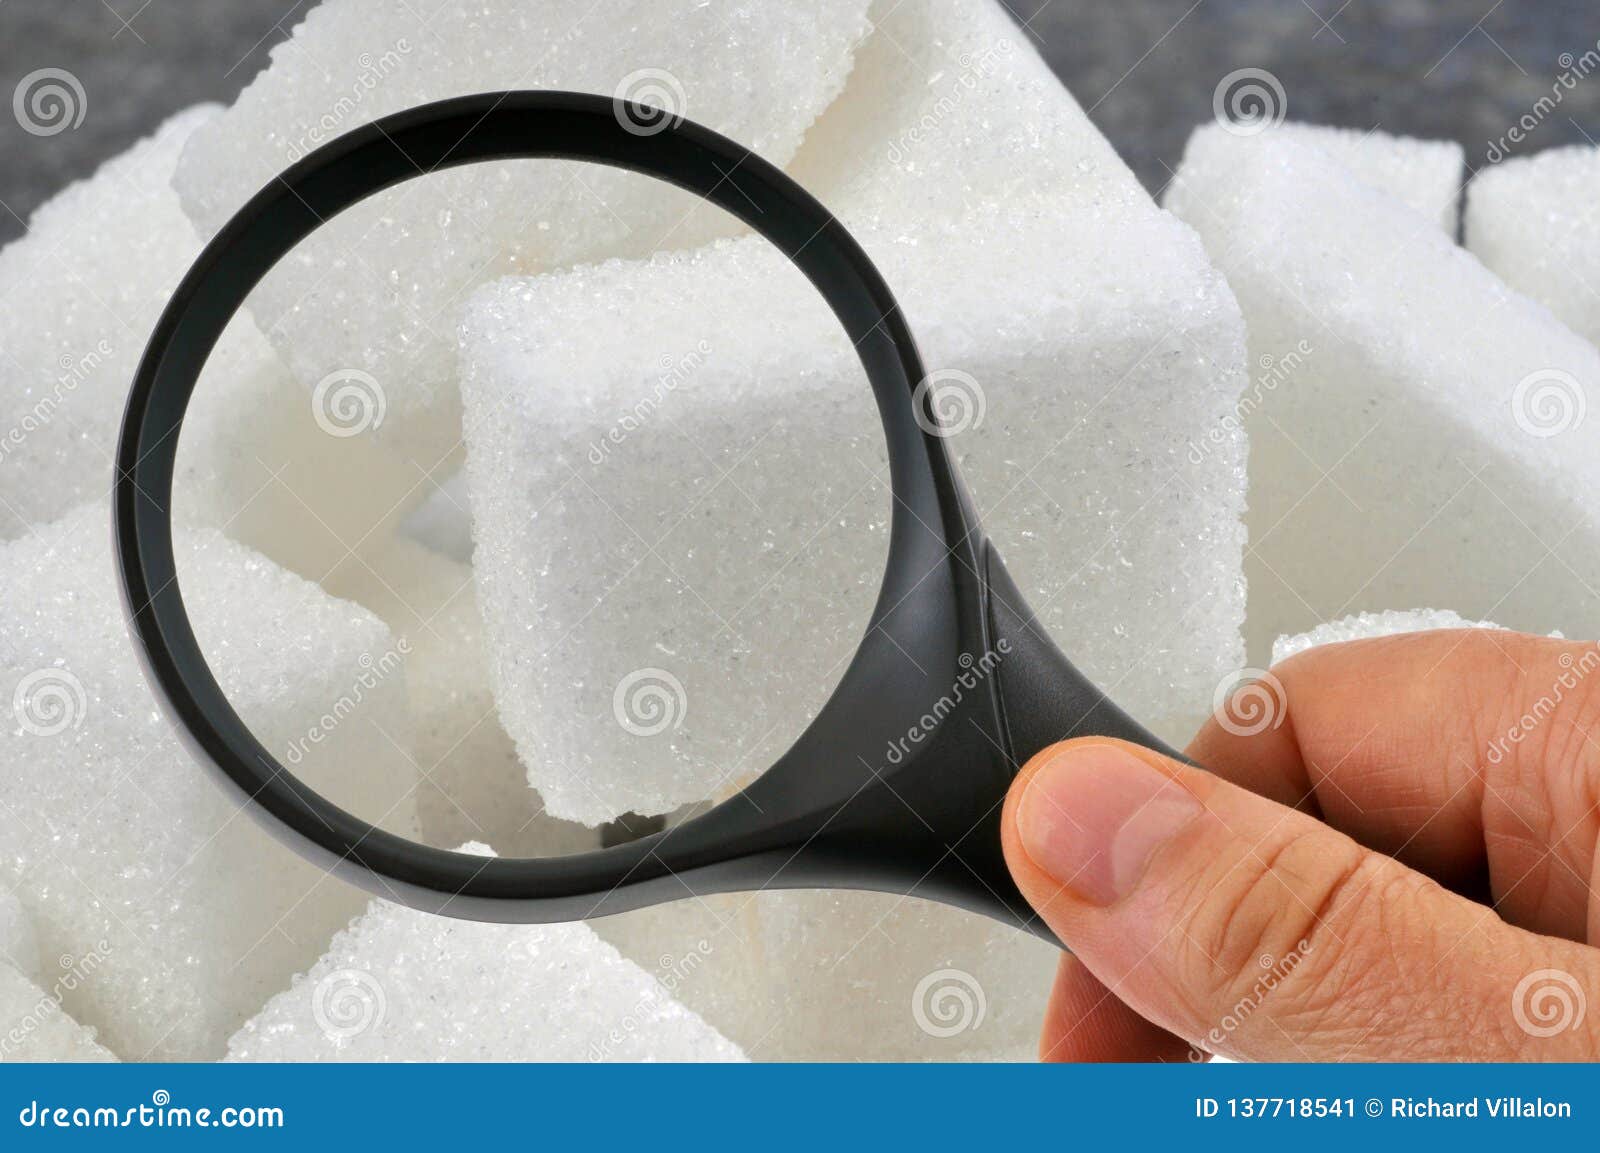 Suikerobservatie met een vergrootglas. Het onderzoeken van suikerkubussen met een vergrootglas in close-up